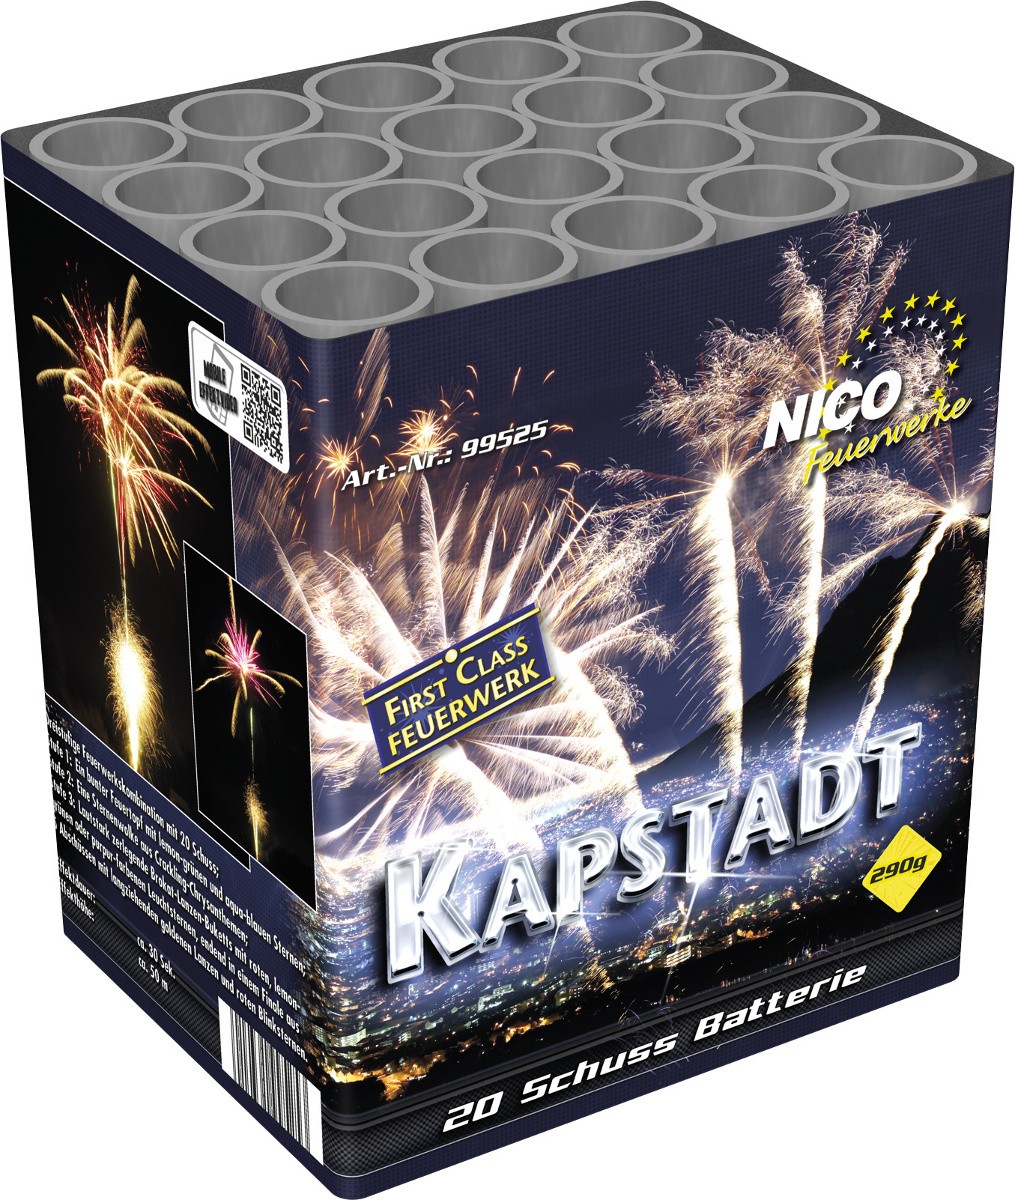 Batterie Kapstadt 20 Schuss Feuerwerk